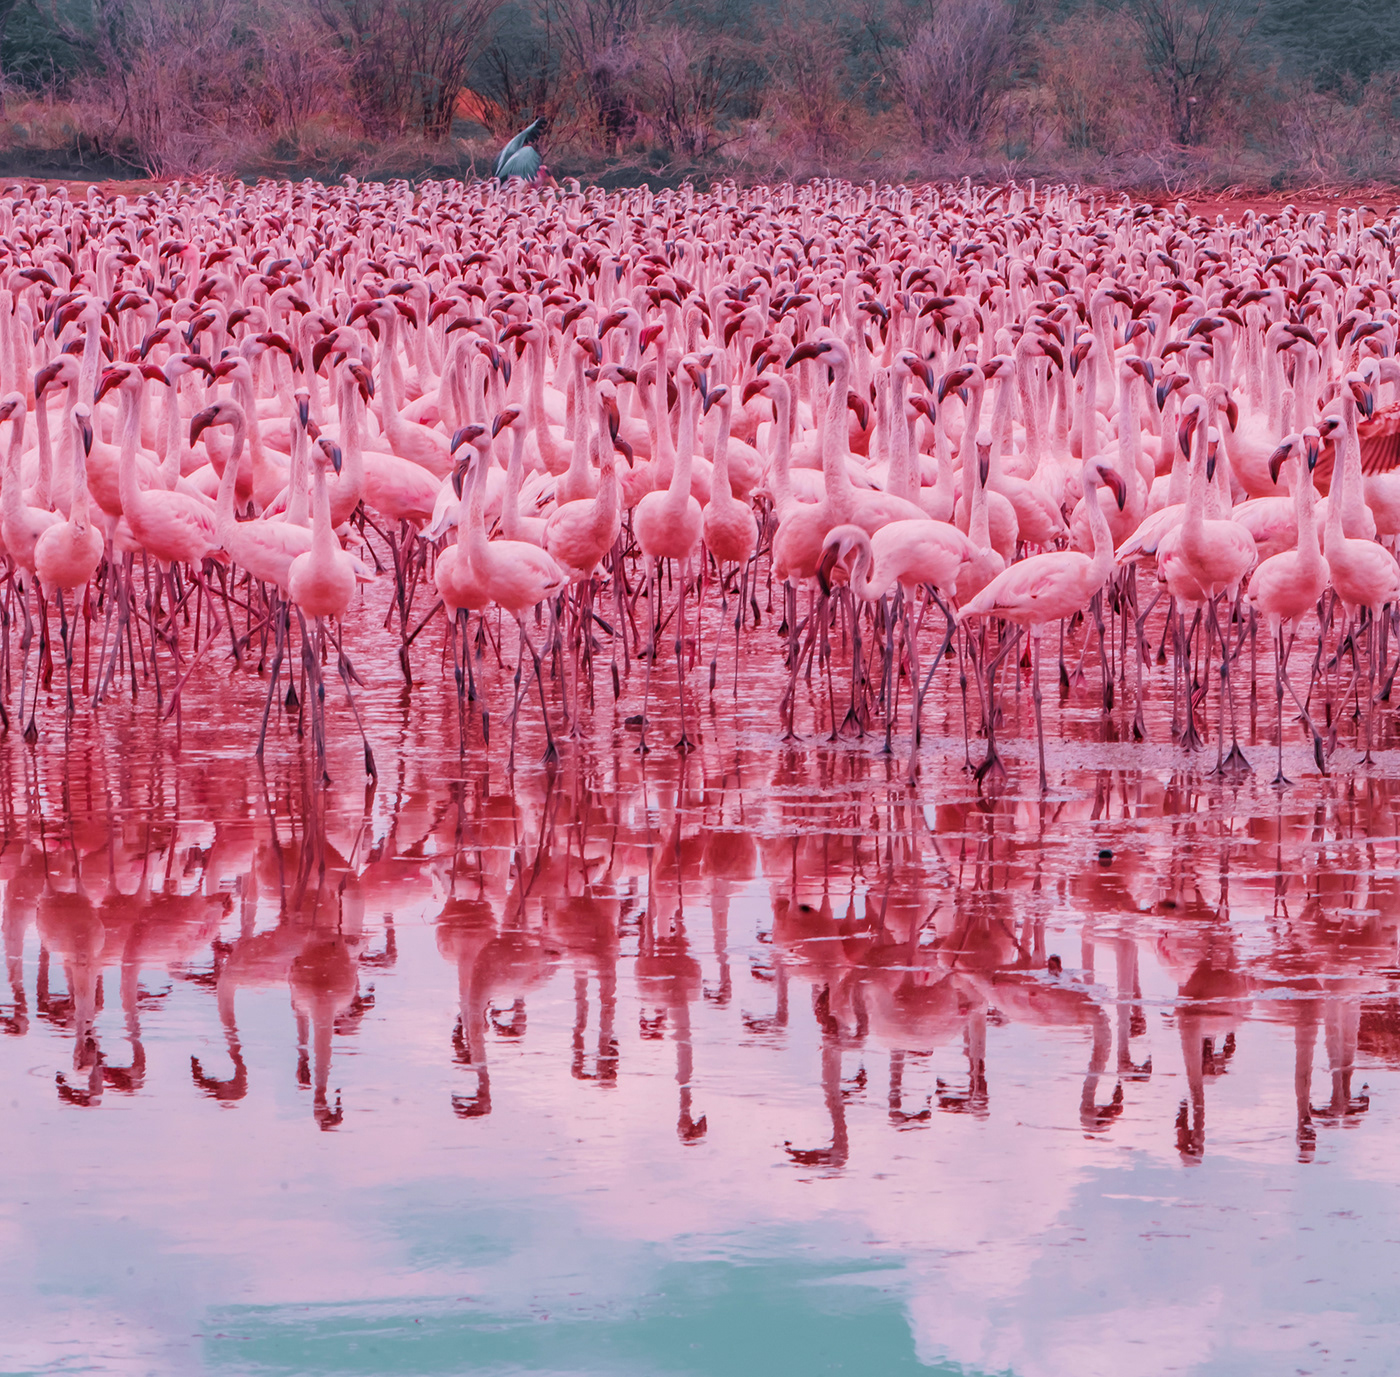 Big Flamingo Project on Behance